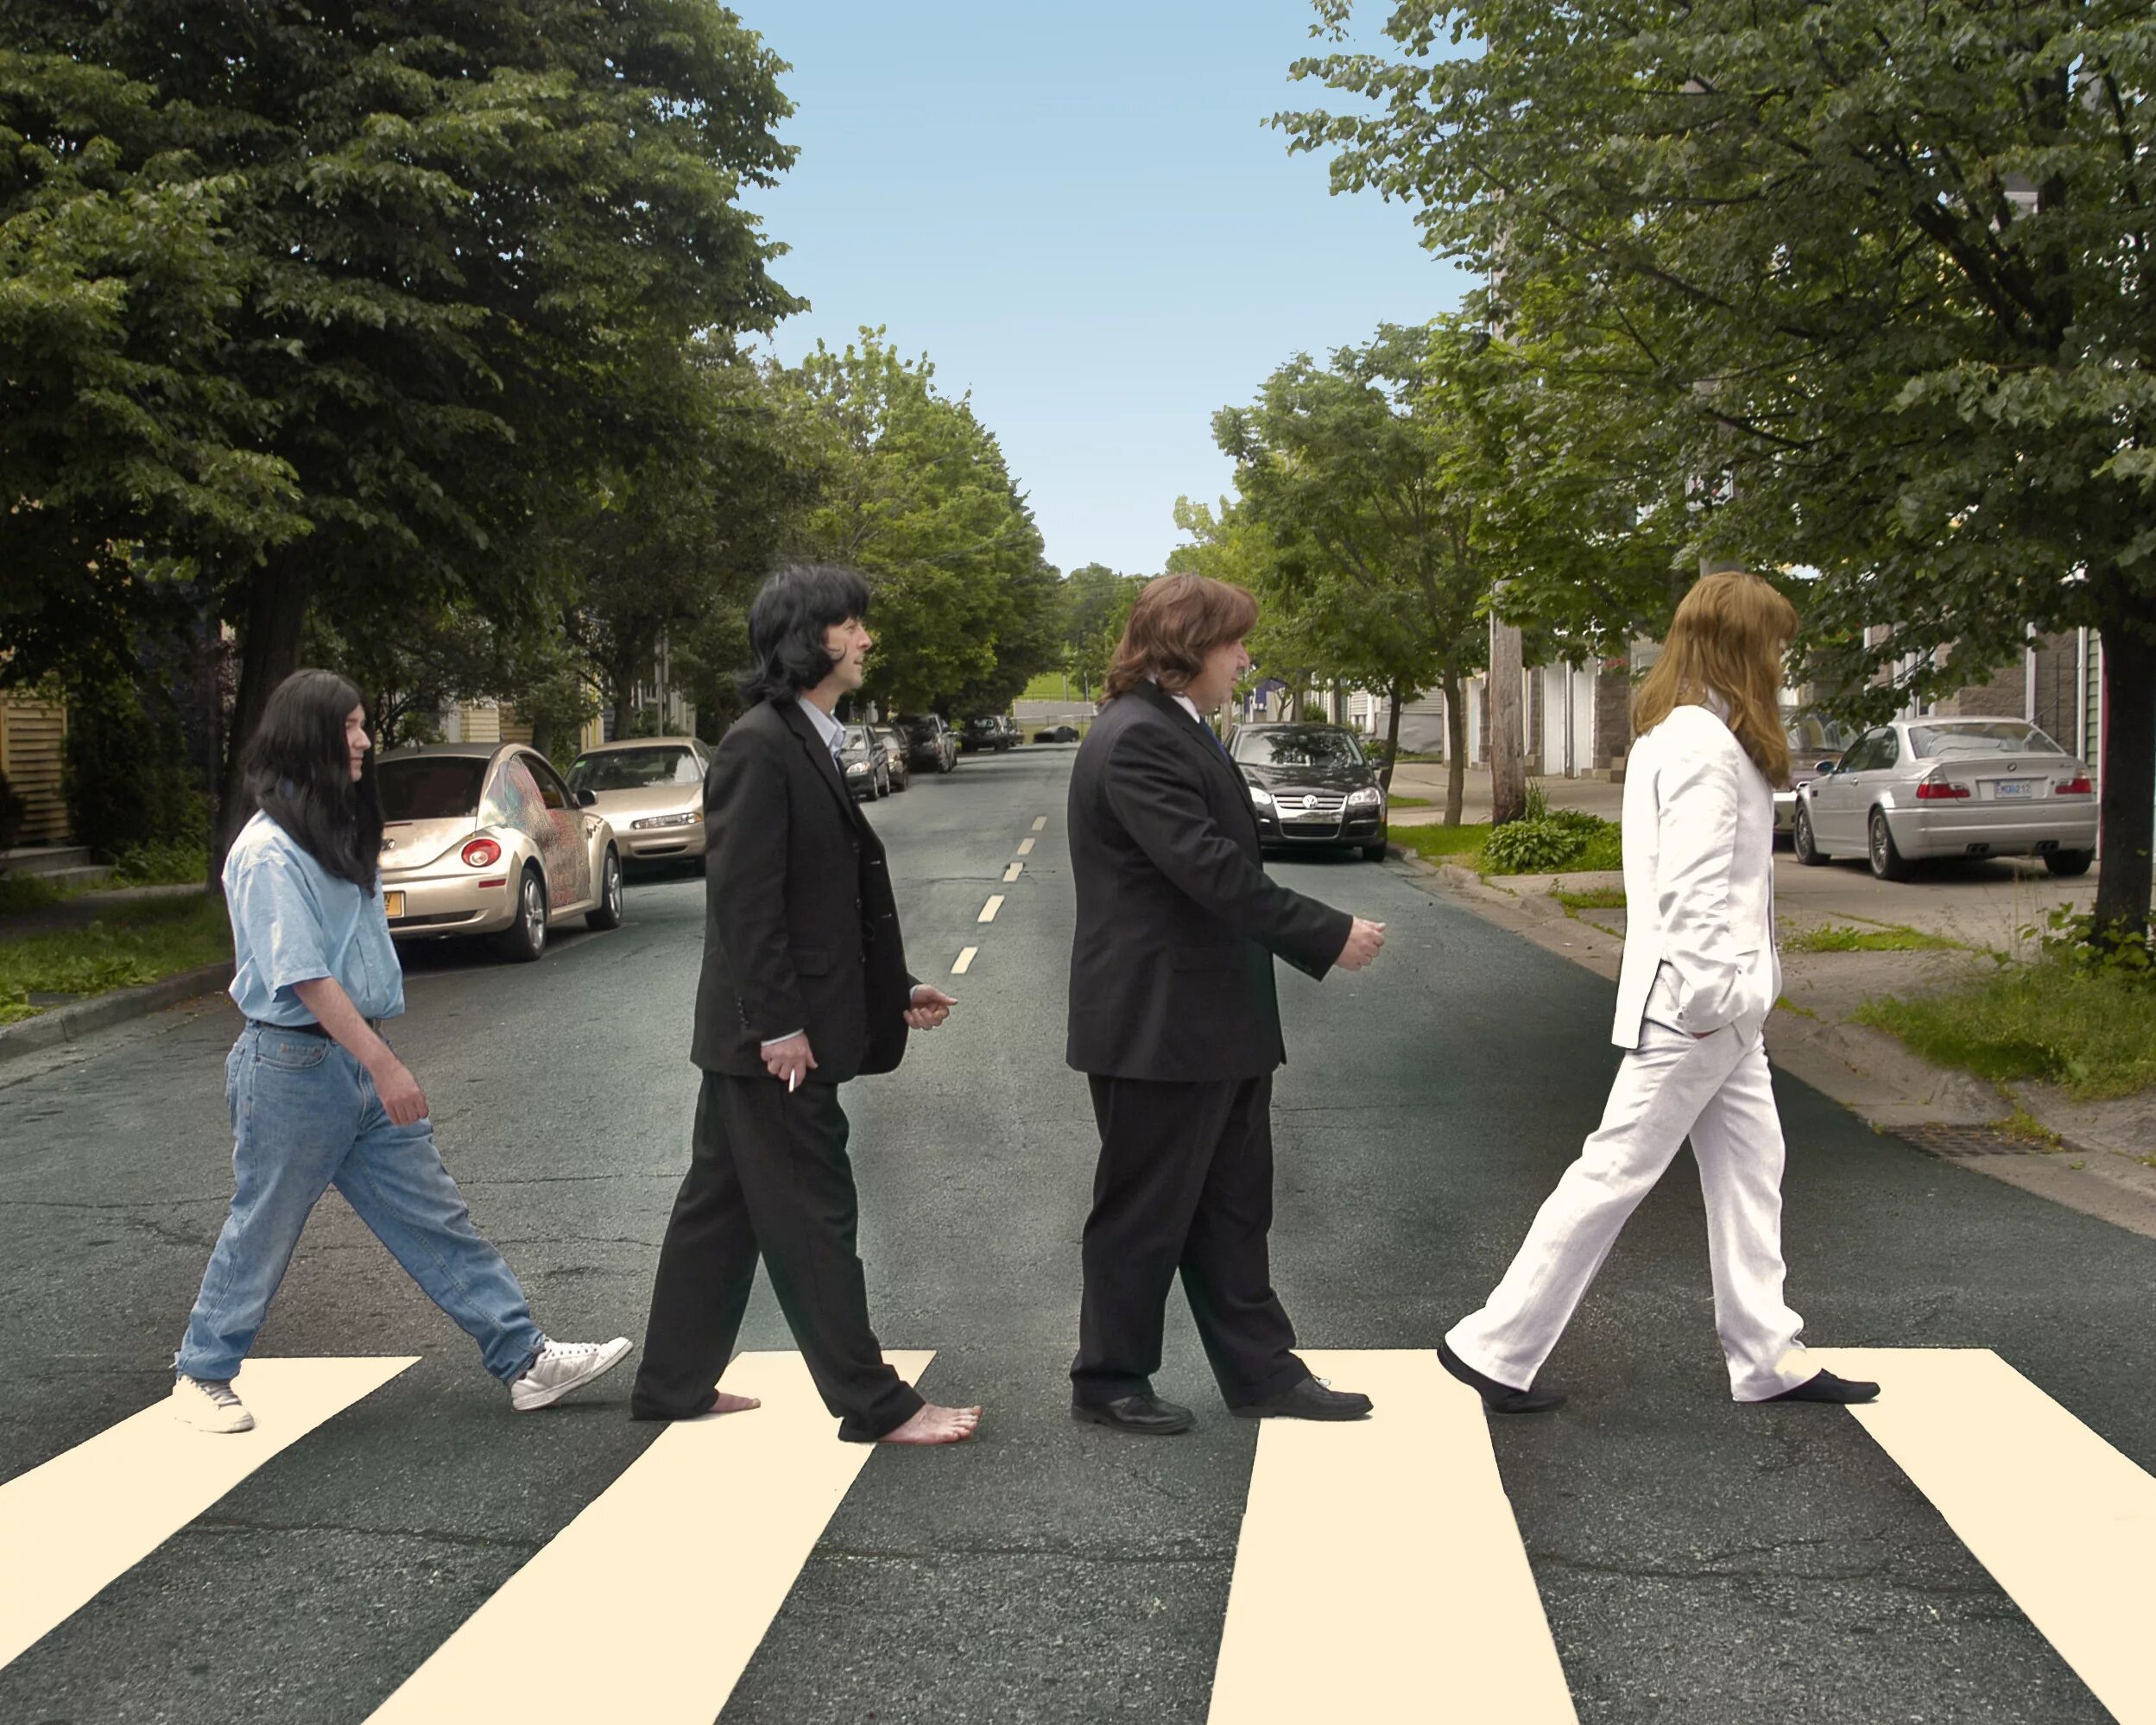 Пародия дорога. Битлз Abbey Road. Эбби роуд (Abbey Road). Битлз на переходе Эбби роуд. Фотосессия Битлз Abbey Road.